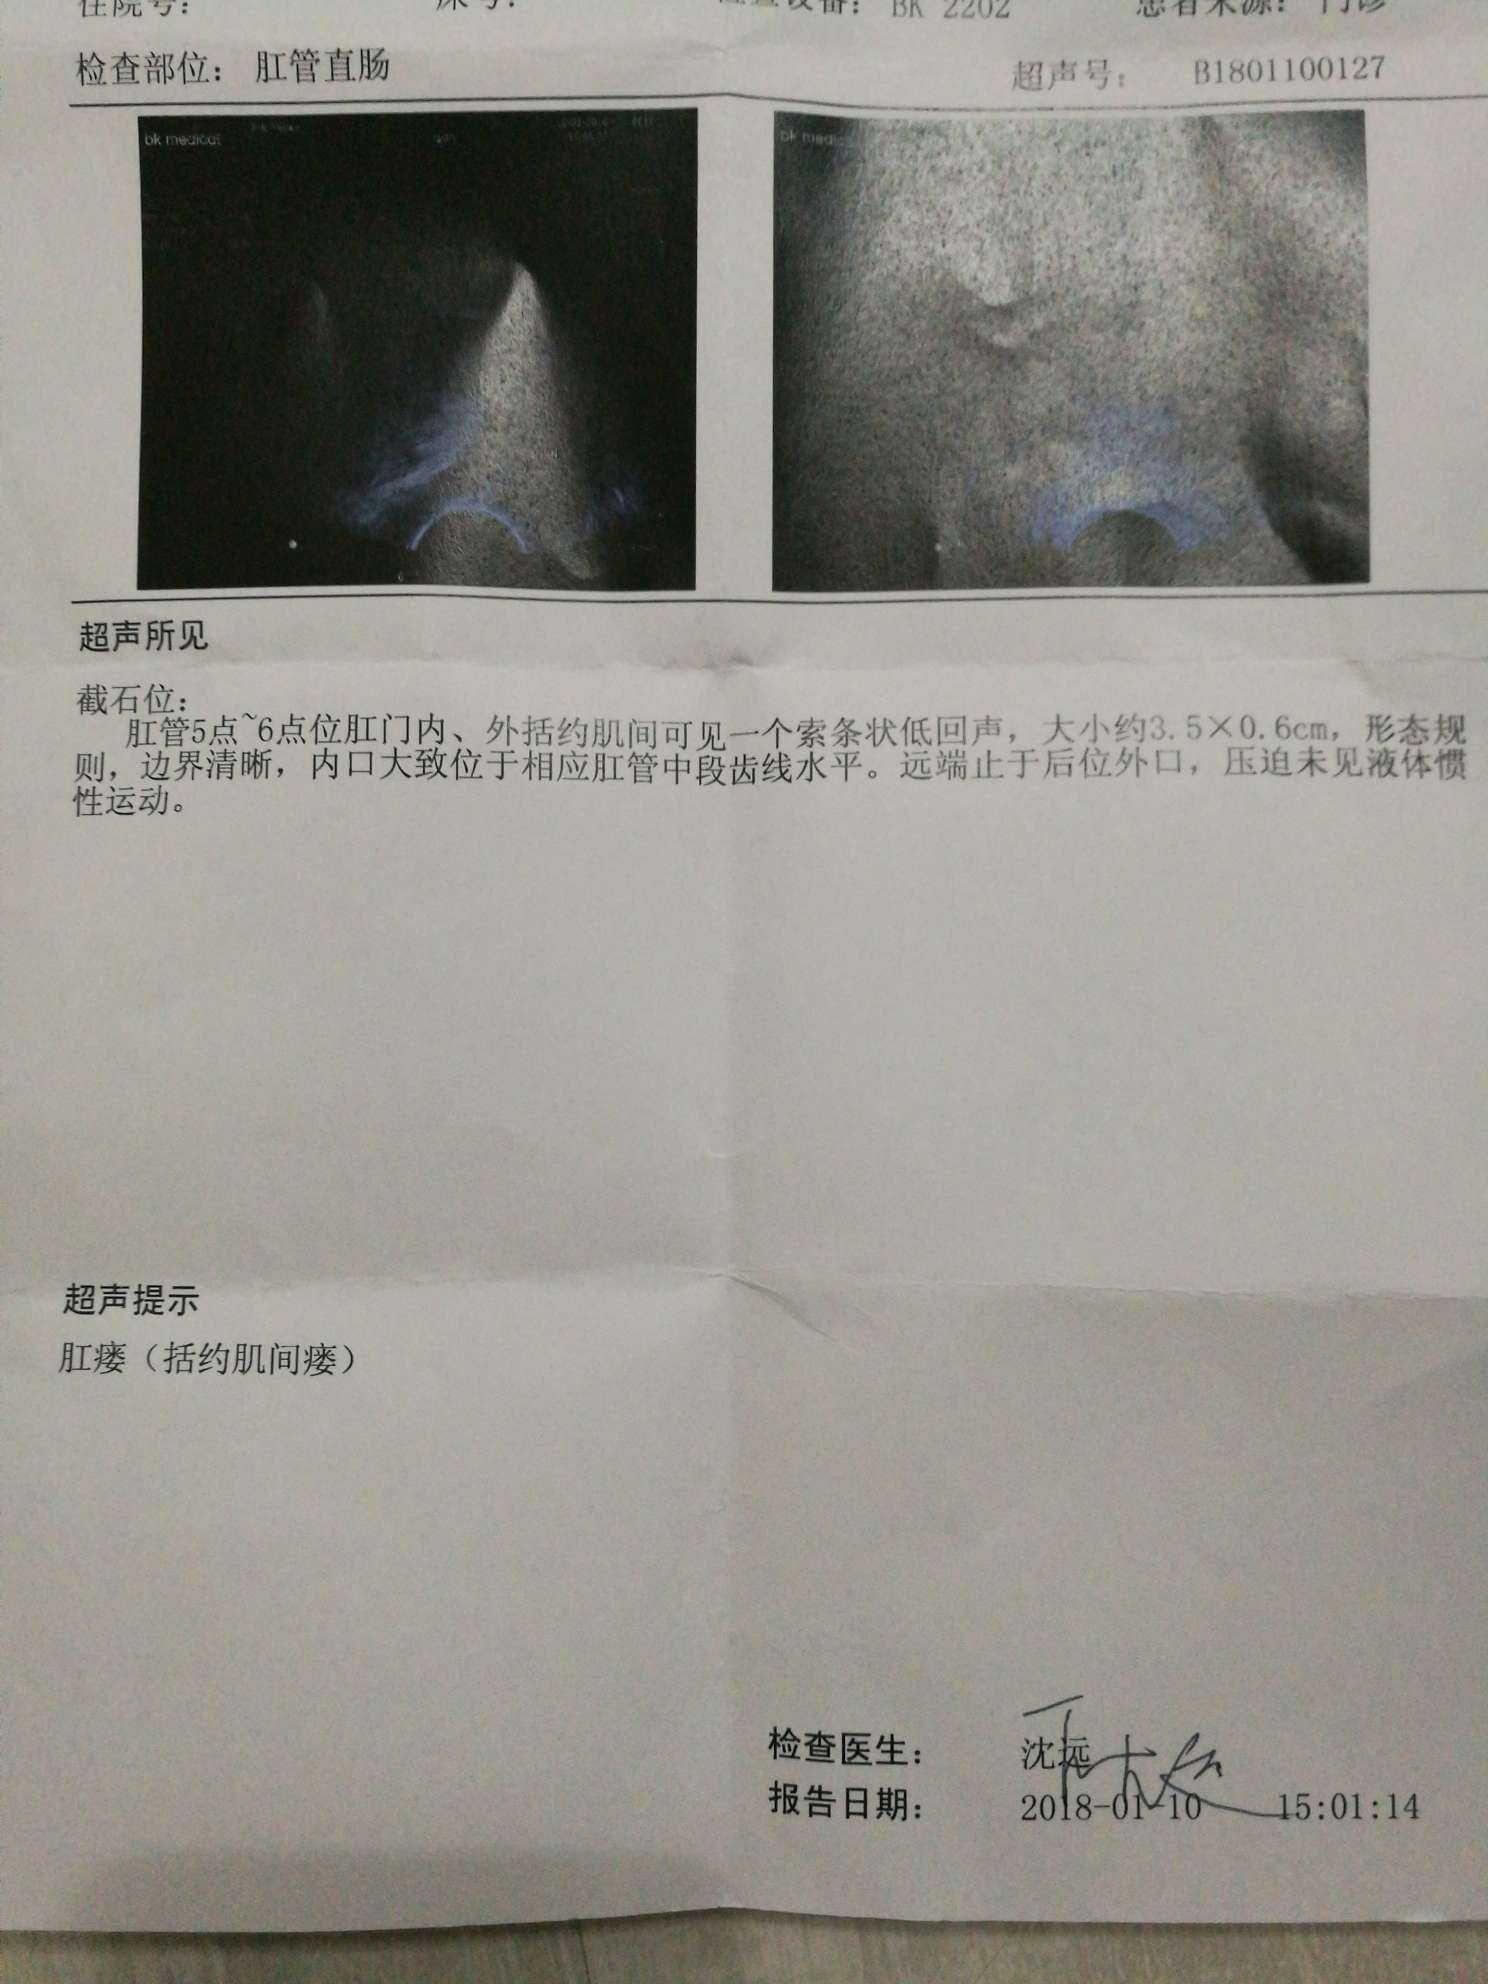 【经典回放】肛瘘MRI诊断_肛管